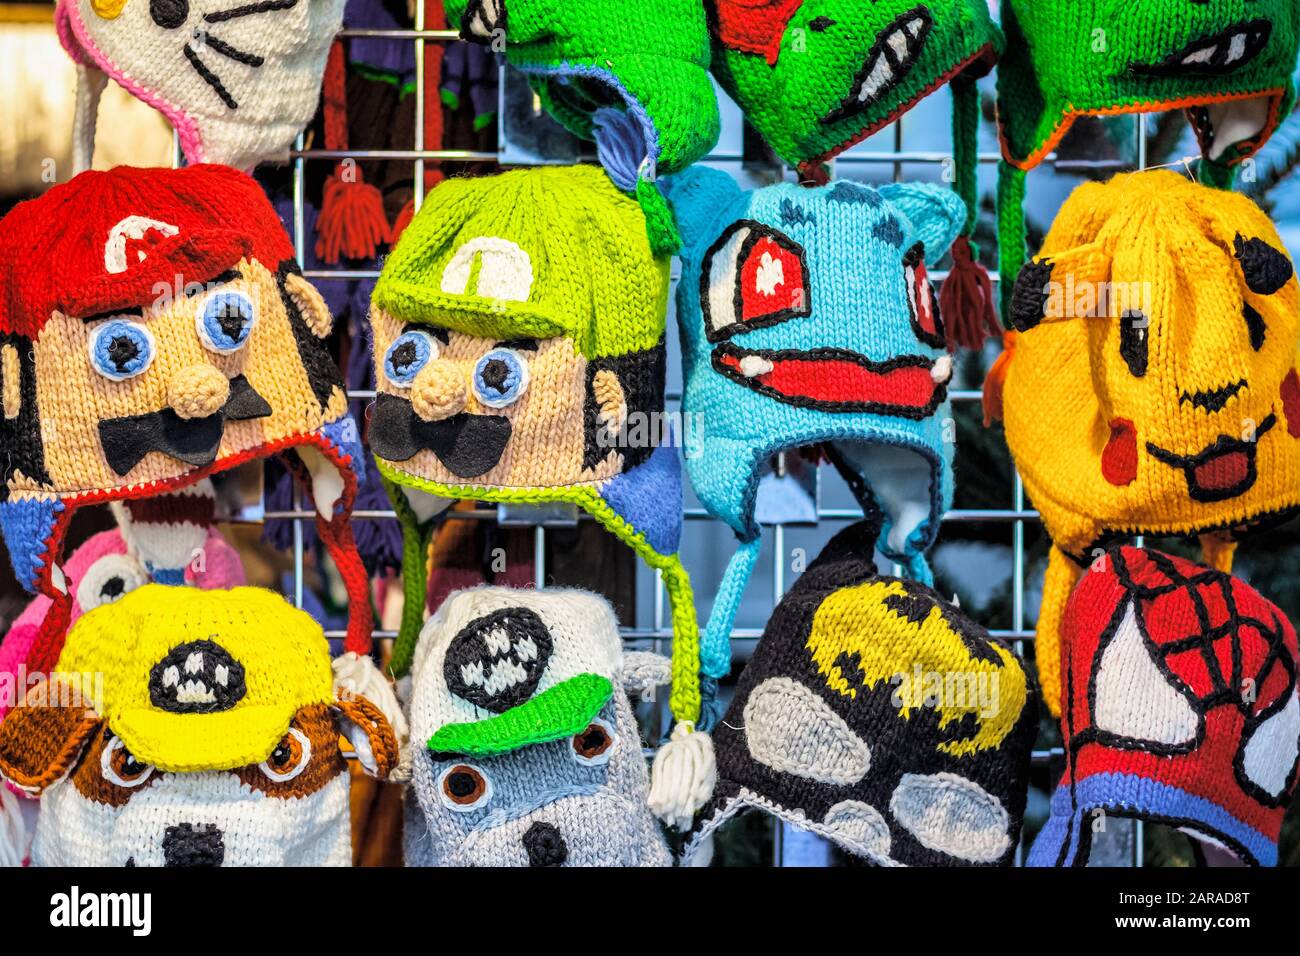 Londres, Reino - 27 de noviembre de 2019 - sombreros de punto de ganchillo en diferentes personajes de dibujos animados que se exhiben en mercado navideño de Winter Wonderland Fotografía de - Alamy